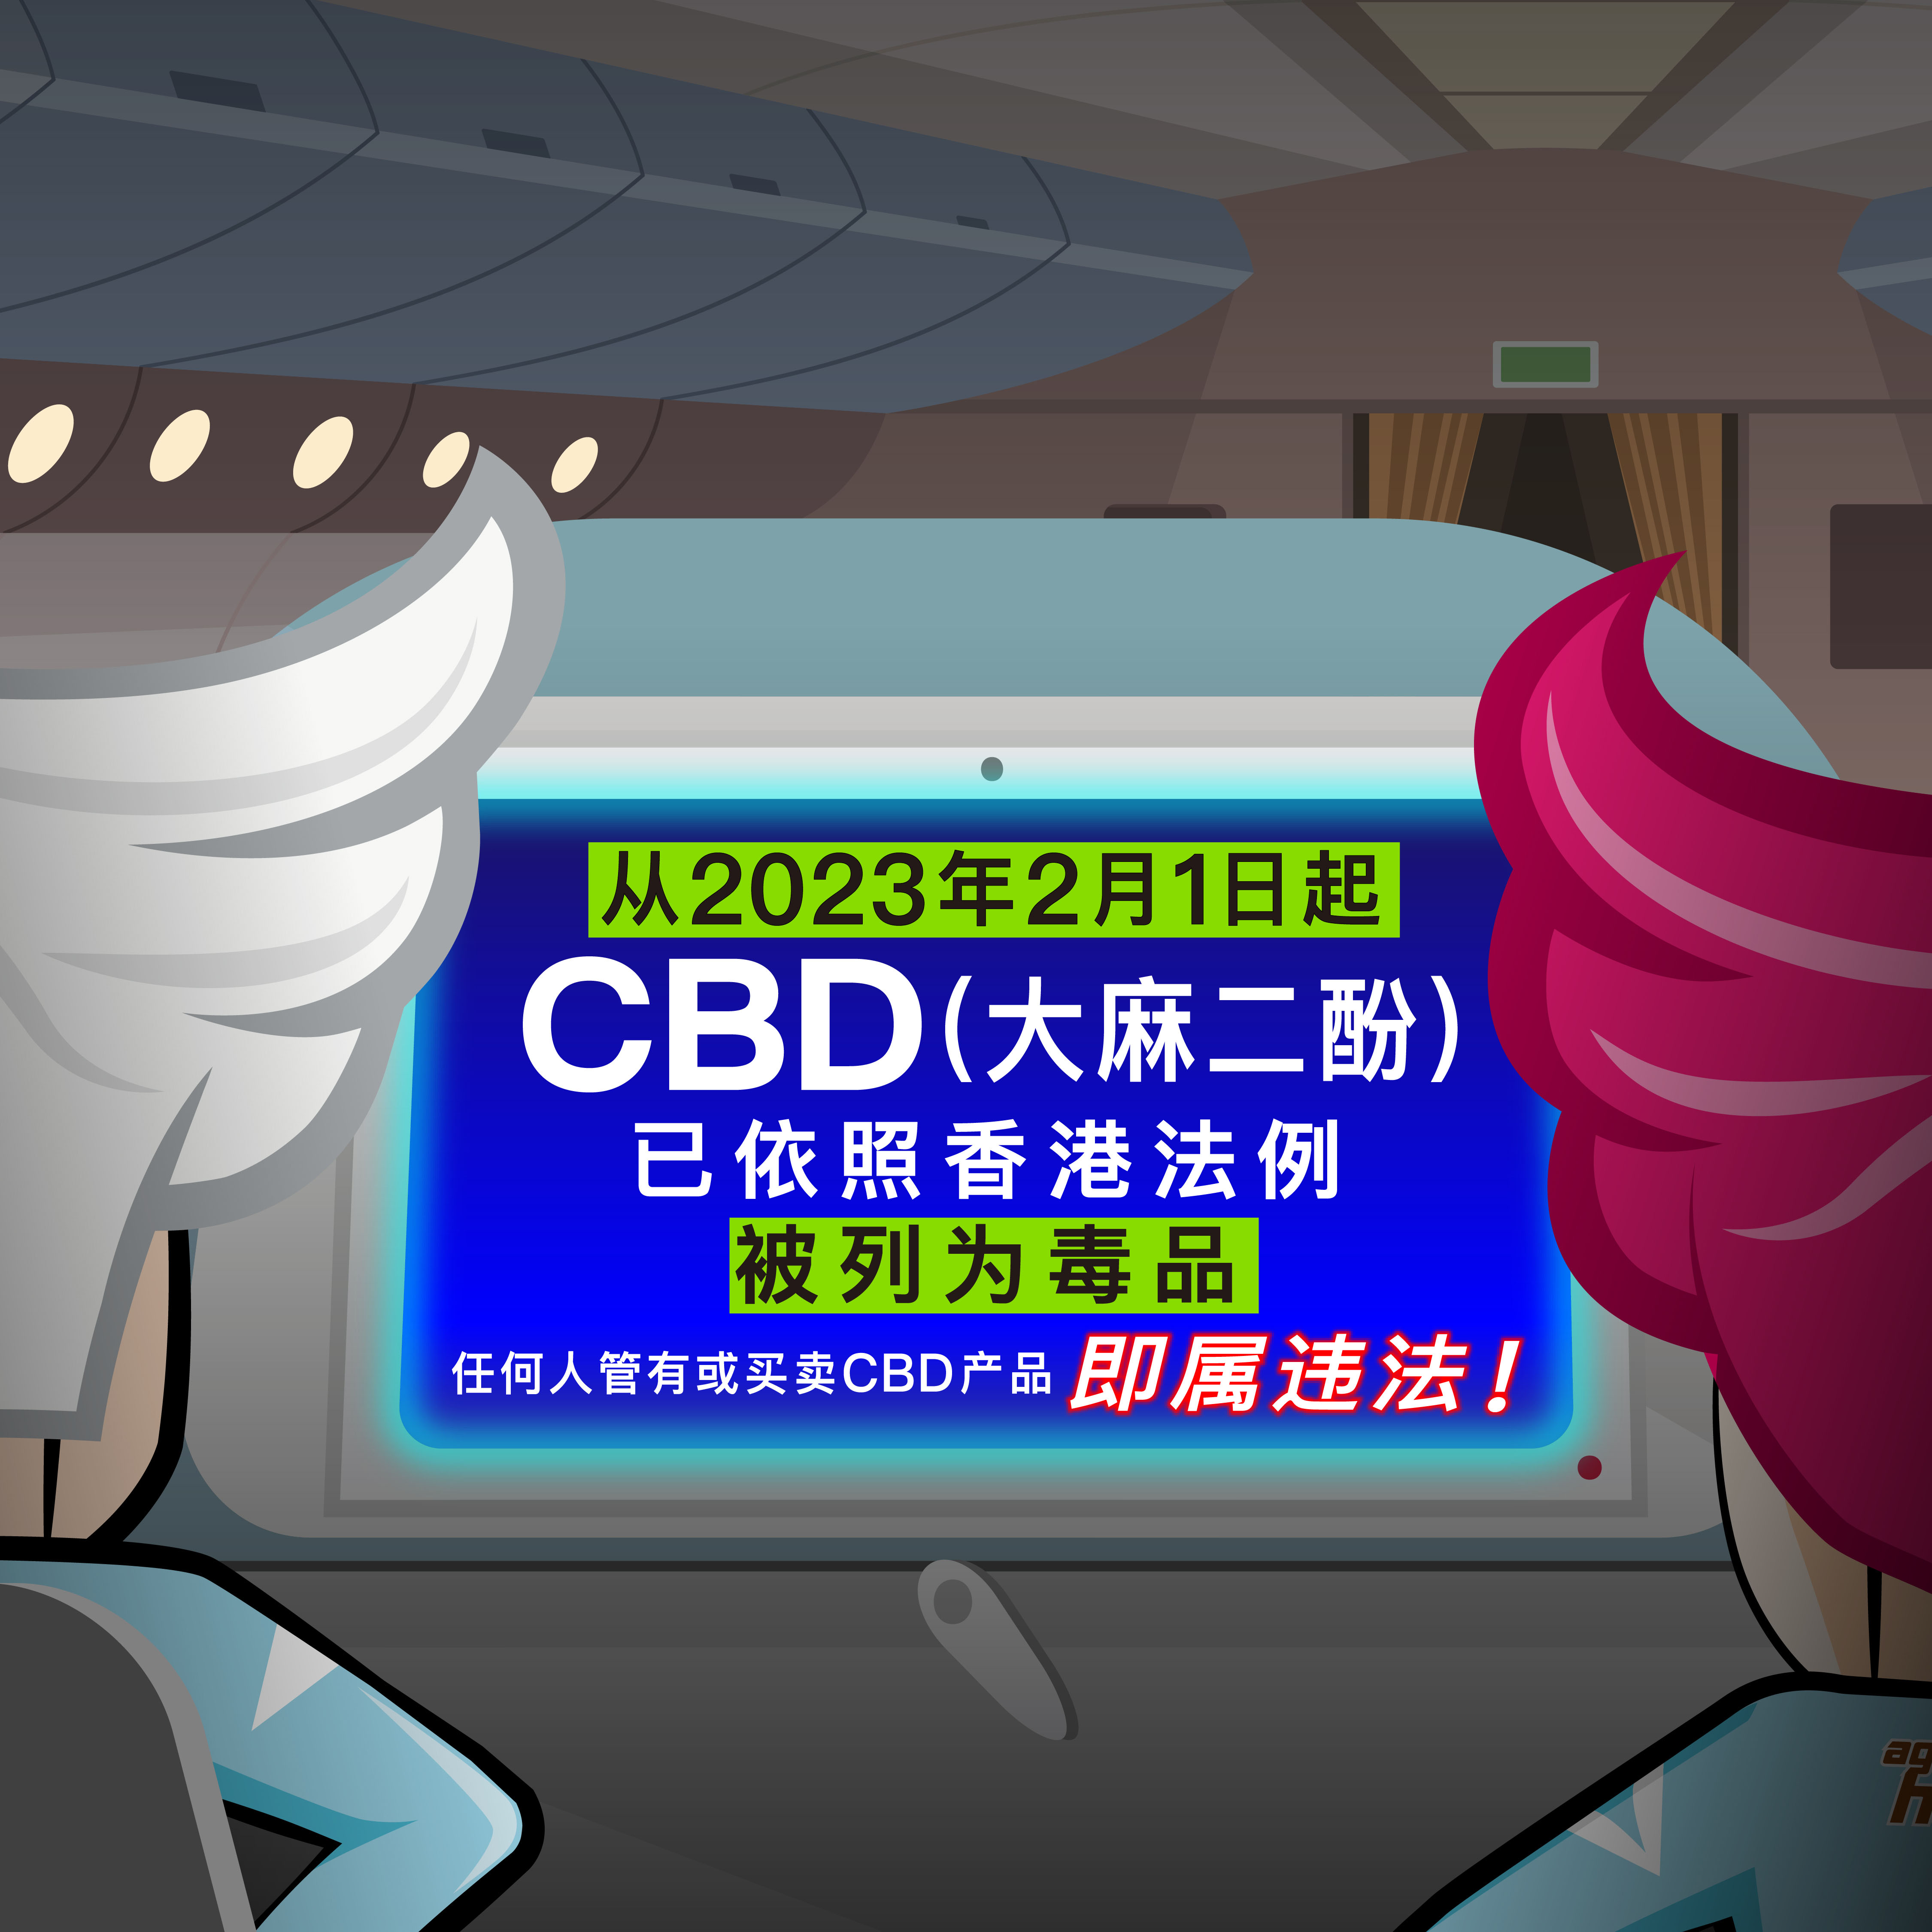 从2023年2月1日起CBD(大麻二酚)已依照香港法例被列为毒品